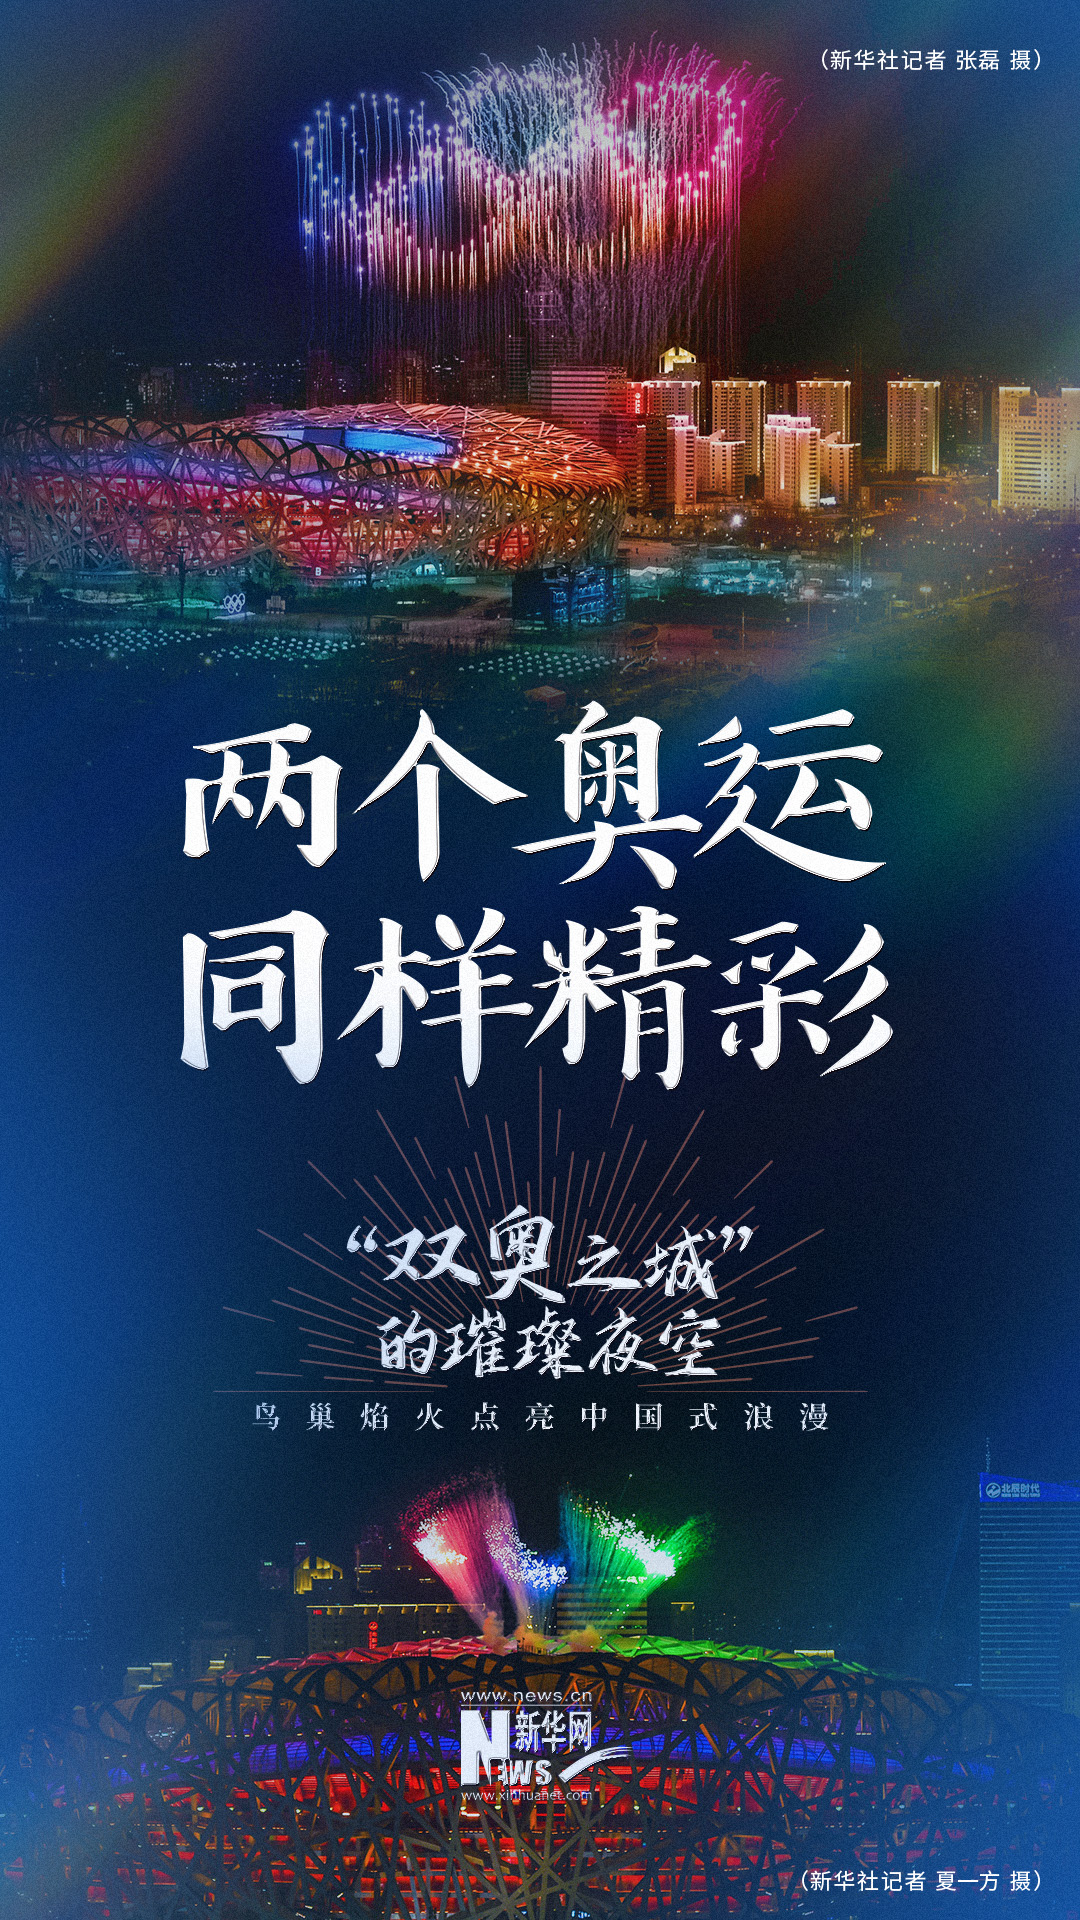 “双奥之城”的璀璨夜空：鸟巢焰火点亮中国式浪漫